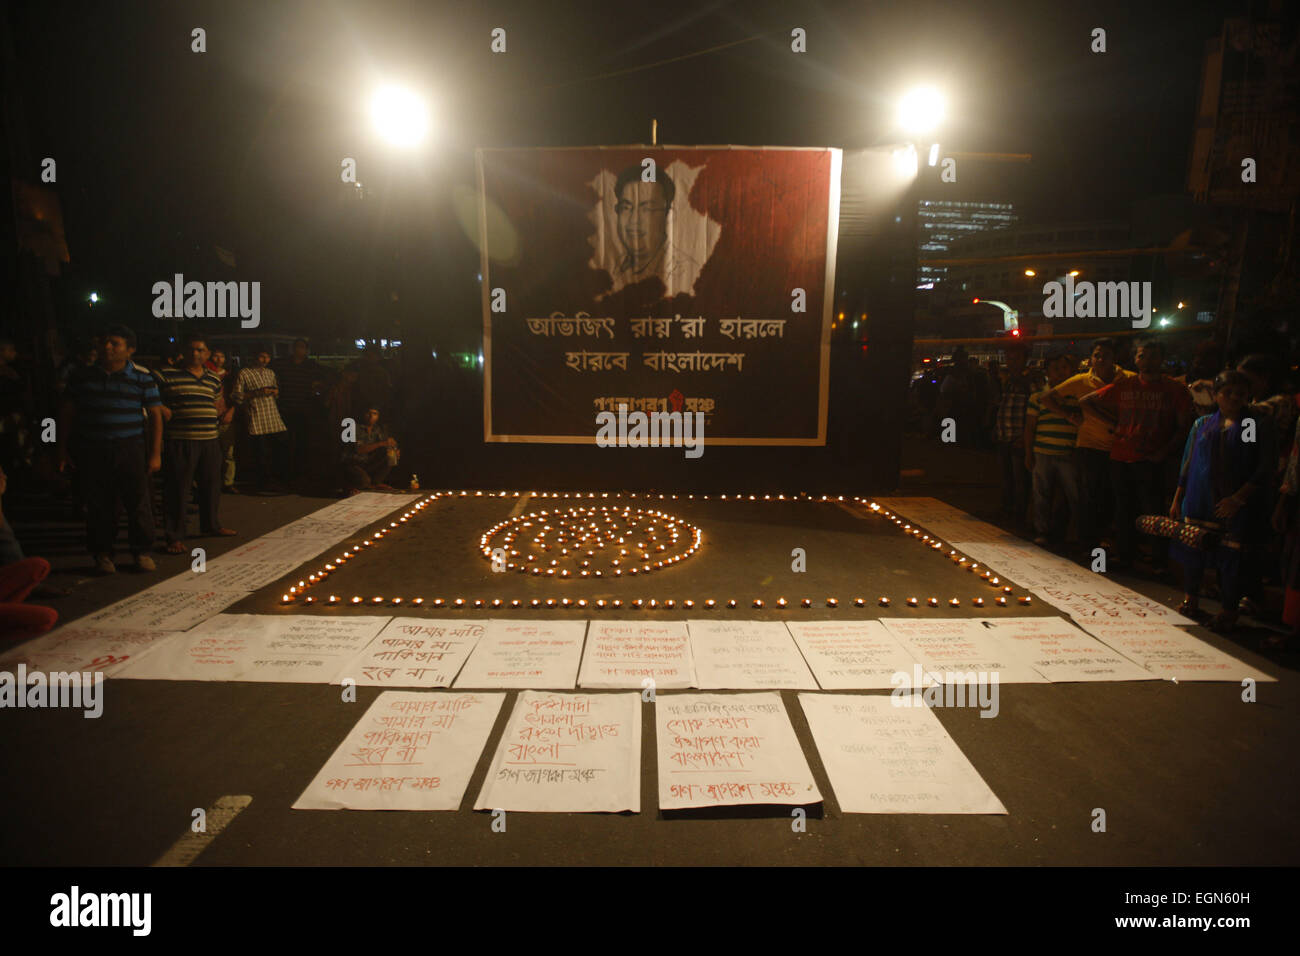 Dhaka, Bangladesh. Feb 27, 2015. Un militant du Bangladesh bougie allumée devant une affiche présentant un portrait de Avijit Roy comme d'autres se réunissent au cours d'une manifestation contre le Roy de Dhaka, Bangladesh, le vendredi 27 février, 2015. Armé d'un couteau une foule a frappé à mort un blogger bangladais dont les écrits sur la religion a apporté des islamistes radicaux des menaces. Avijit Roy, d'athée qui prône la laïcité, a été attaqué à Paris alors qu'il marchait d'une foire du livre avec sa femme, qui a été blessé dans l'attaque. Personne n'a été arrêté mais les policiers disent qu'ils étudient un groupe islamiste local que prai Banque D'Images